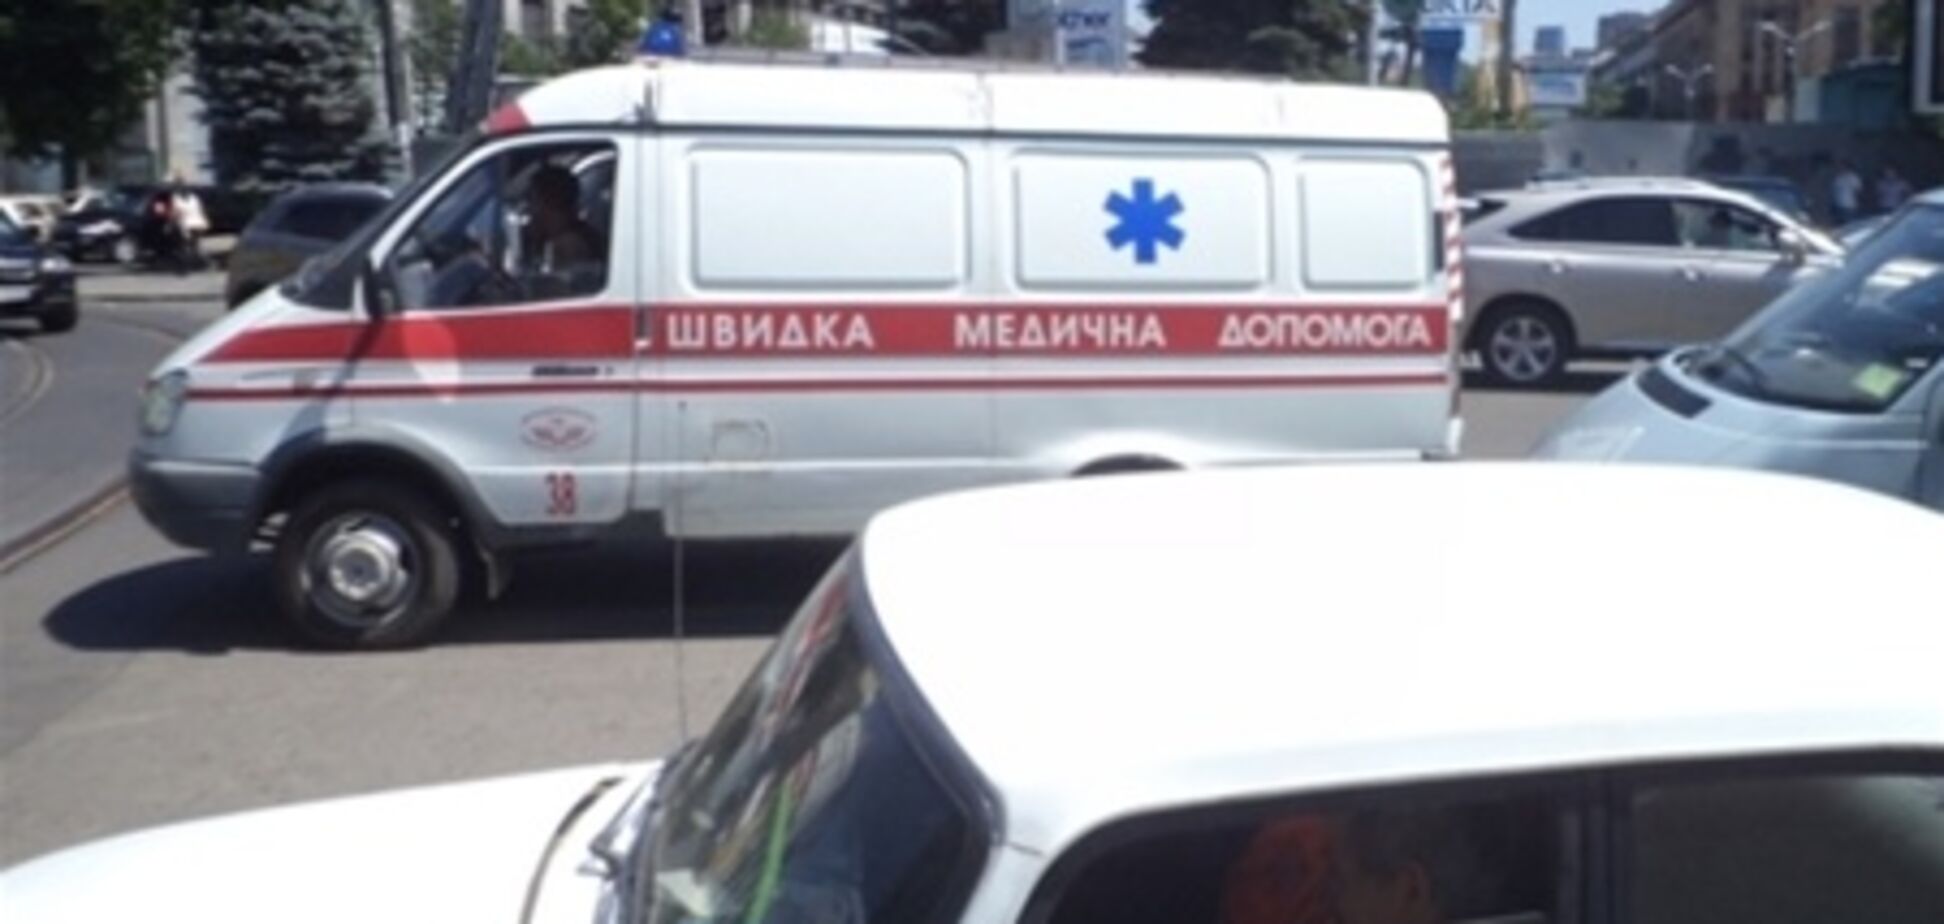 МВС: у Дніпропетровську був не вибух, а спалах